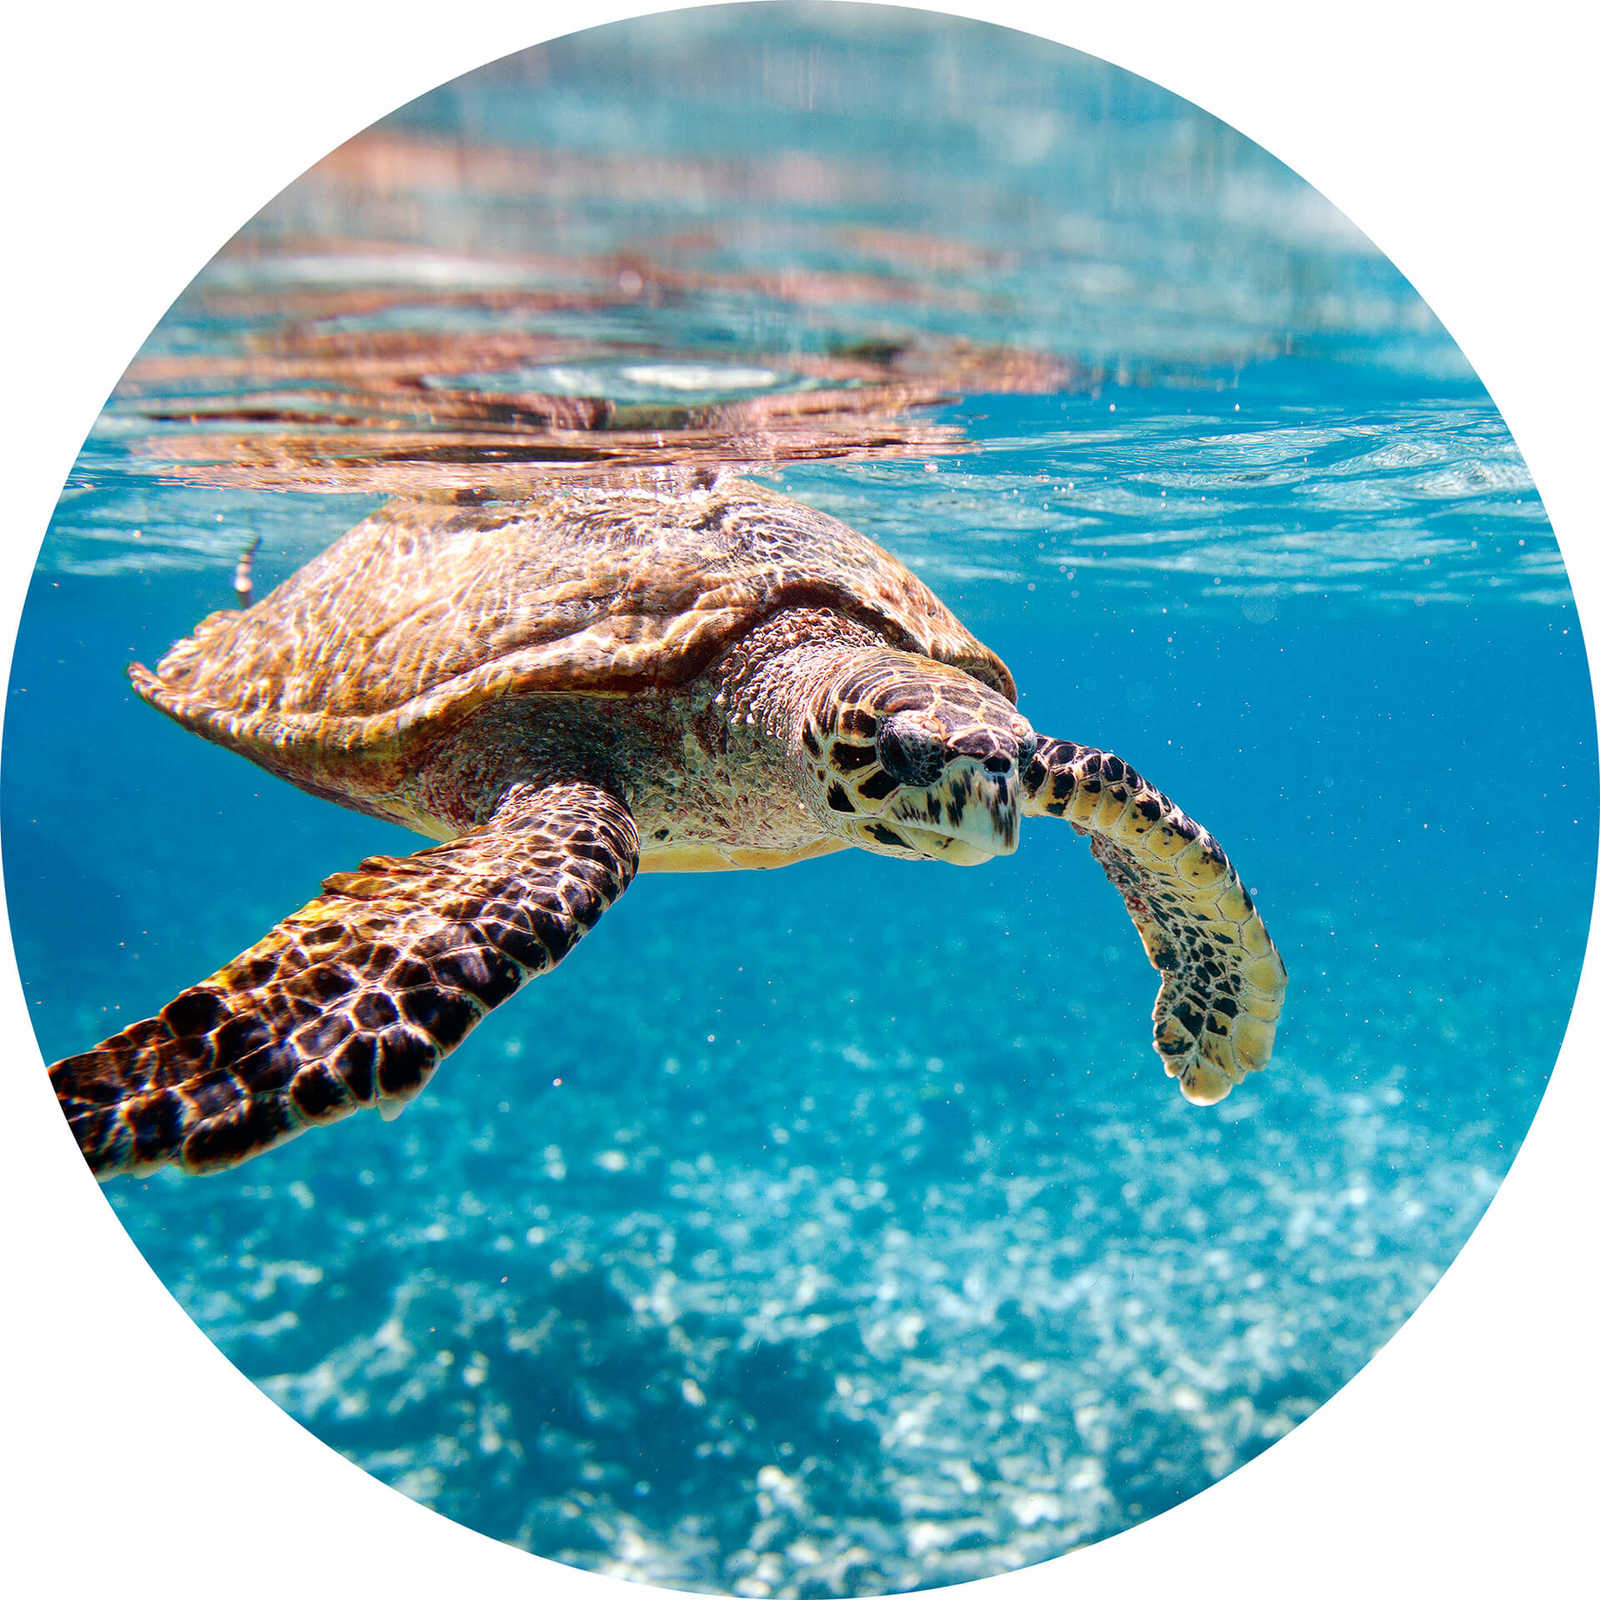         Photo wallpaper round turtle under water
    